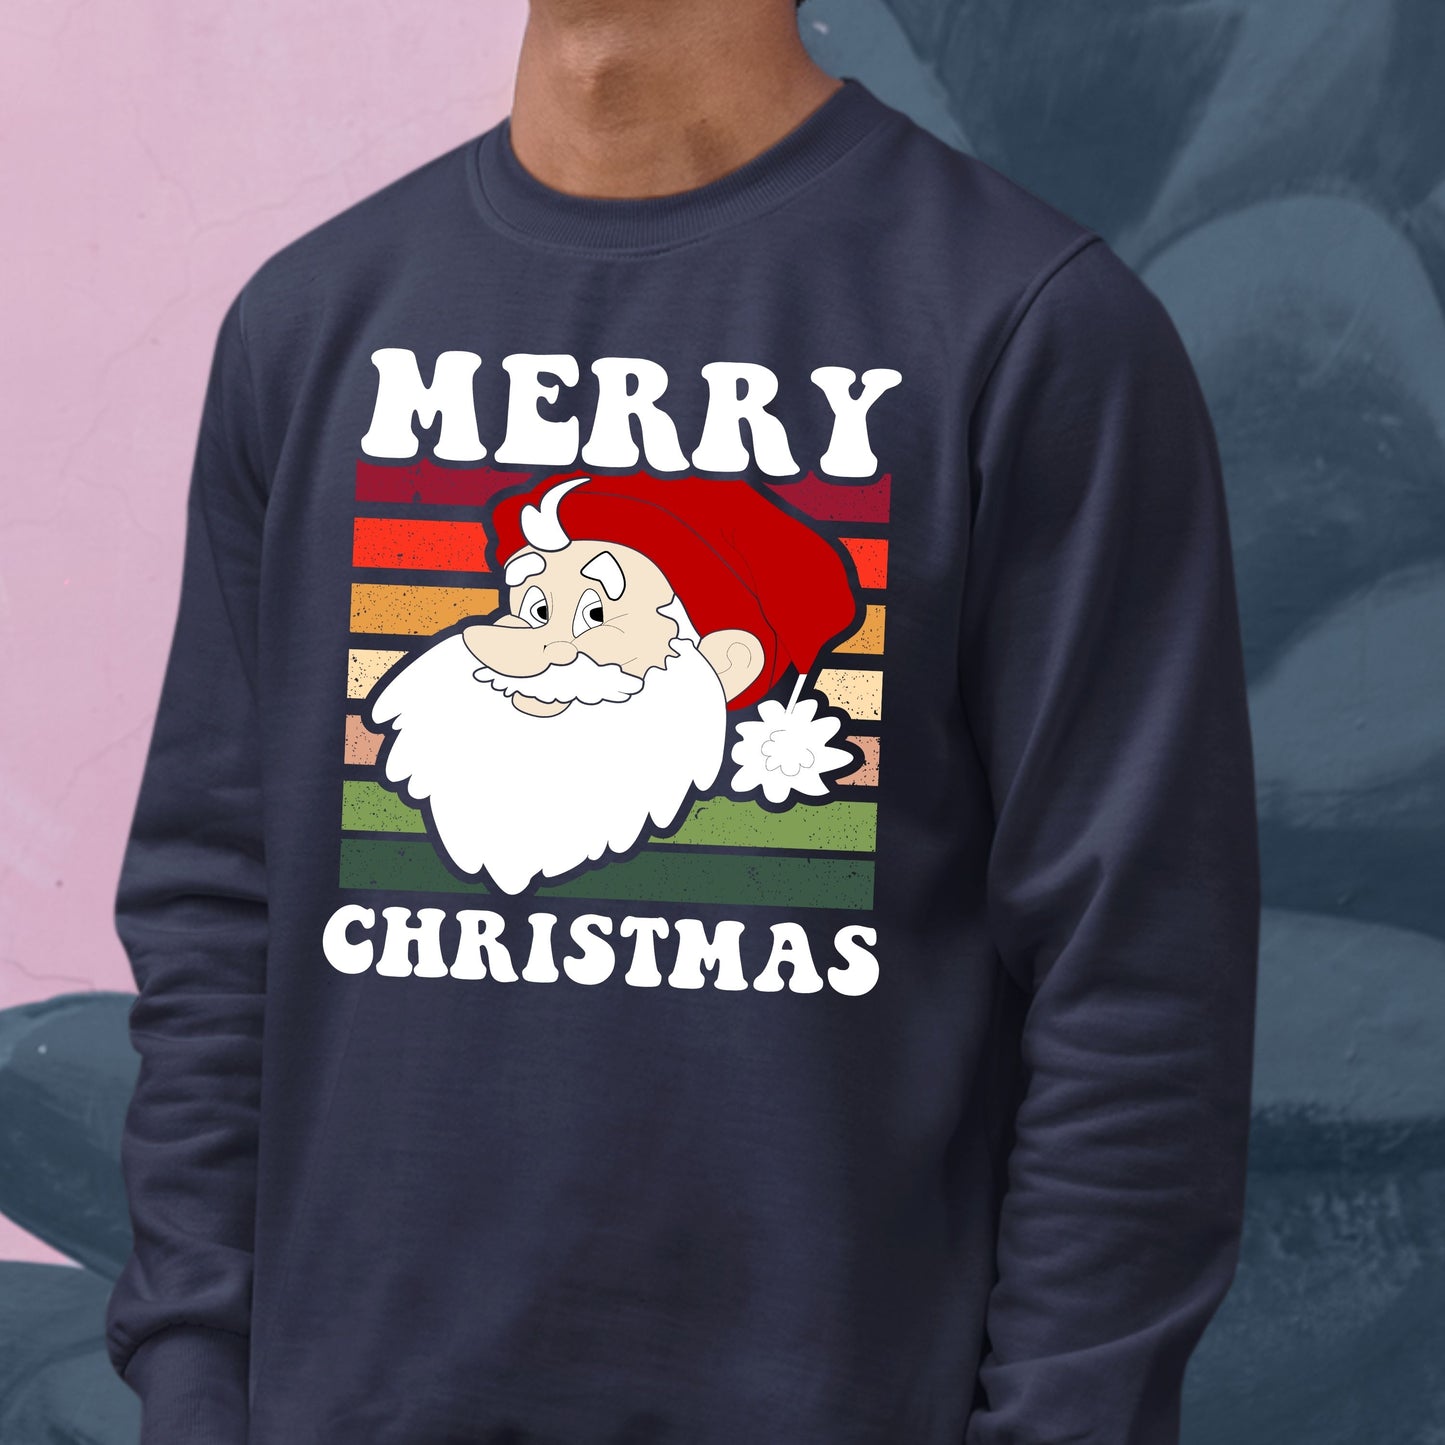 Merry Christmas, Youth Long Sleeve, Christmas Sweatshirts, Christmas Clothing, Christmas Decor, Christmas, Christmas Shirts